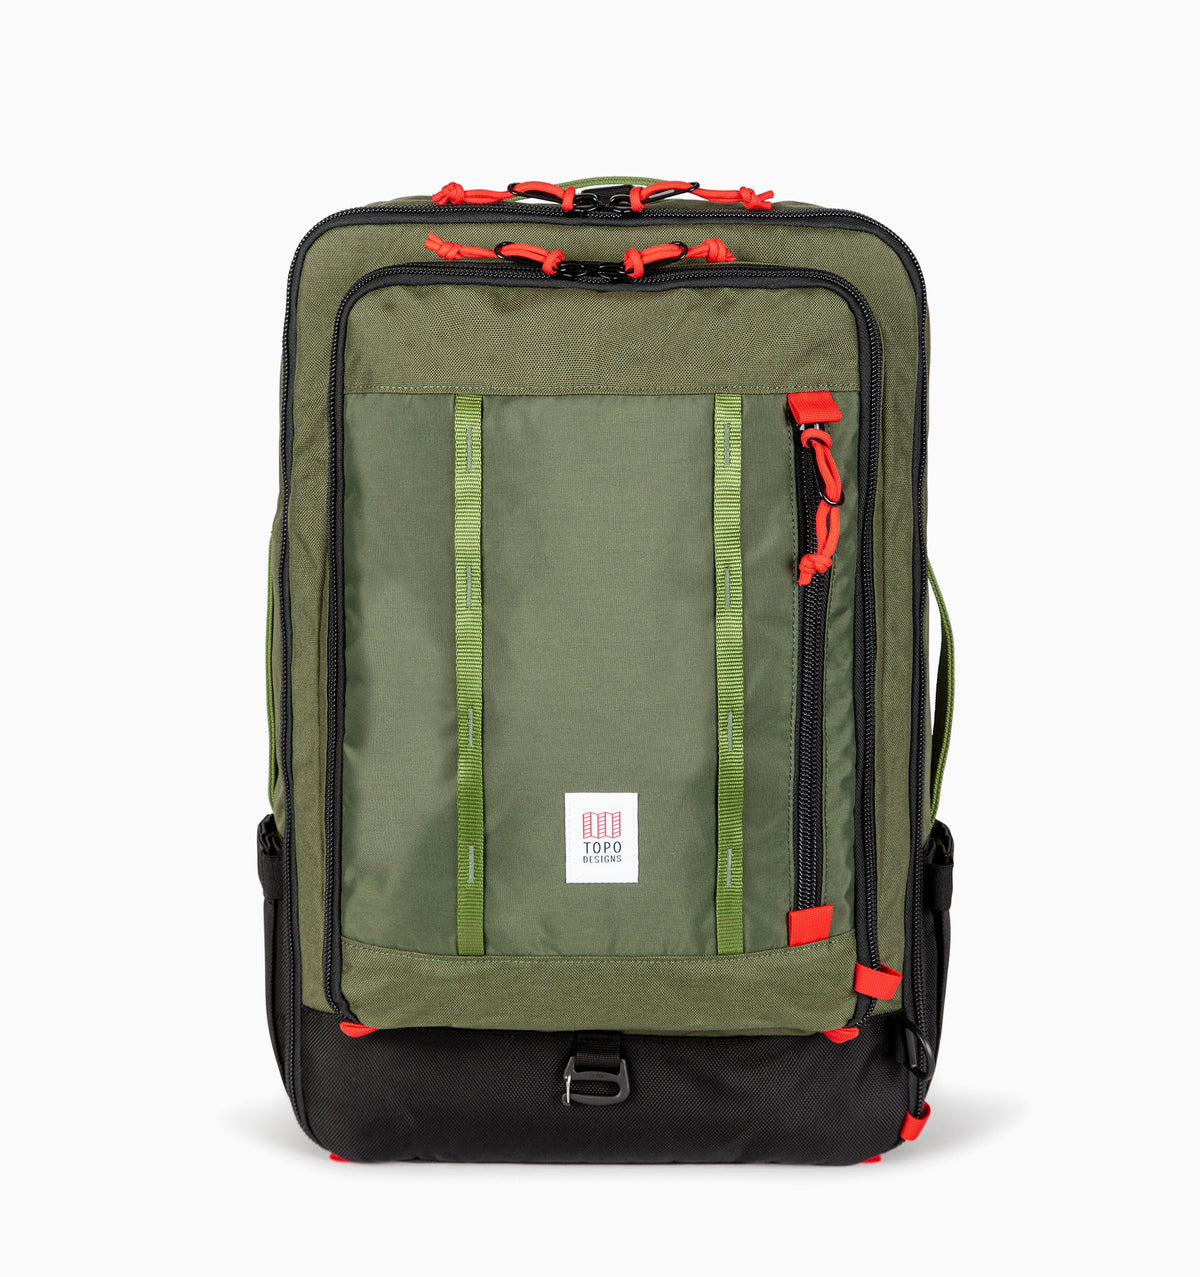 Topo Designs Global Travel Bag 40L - Olive